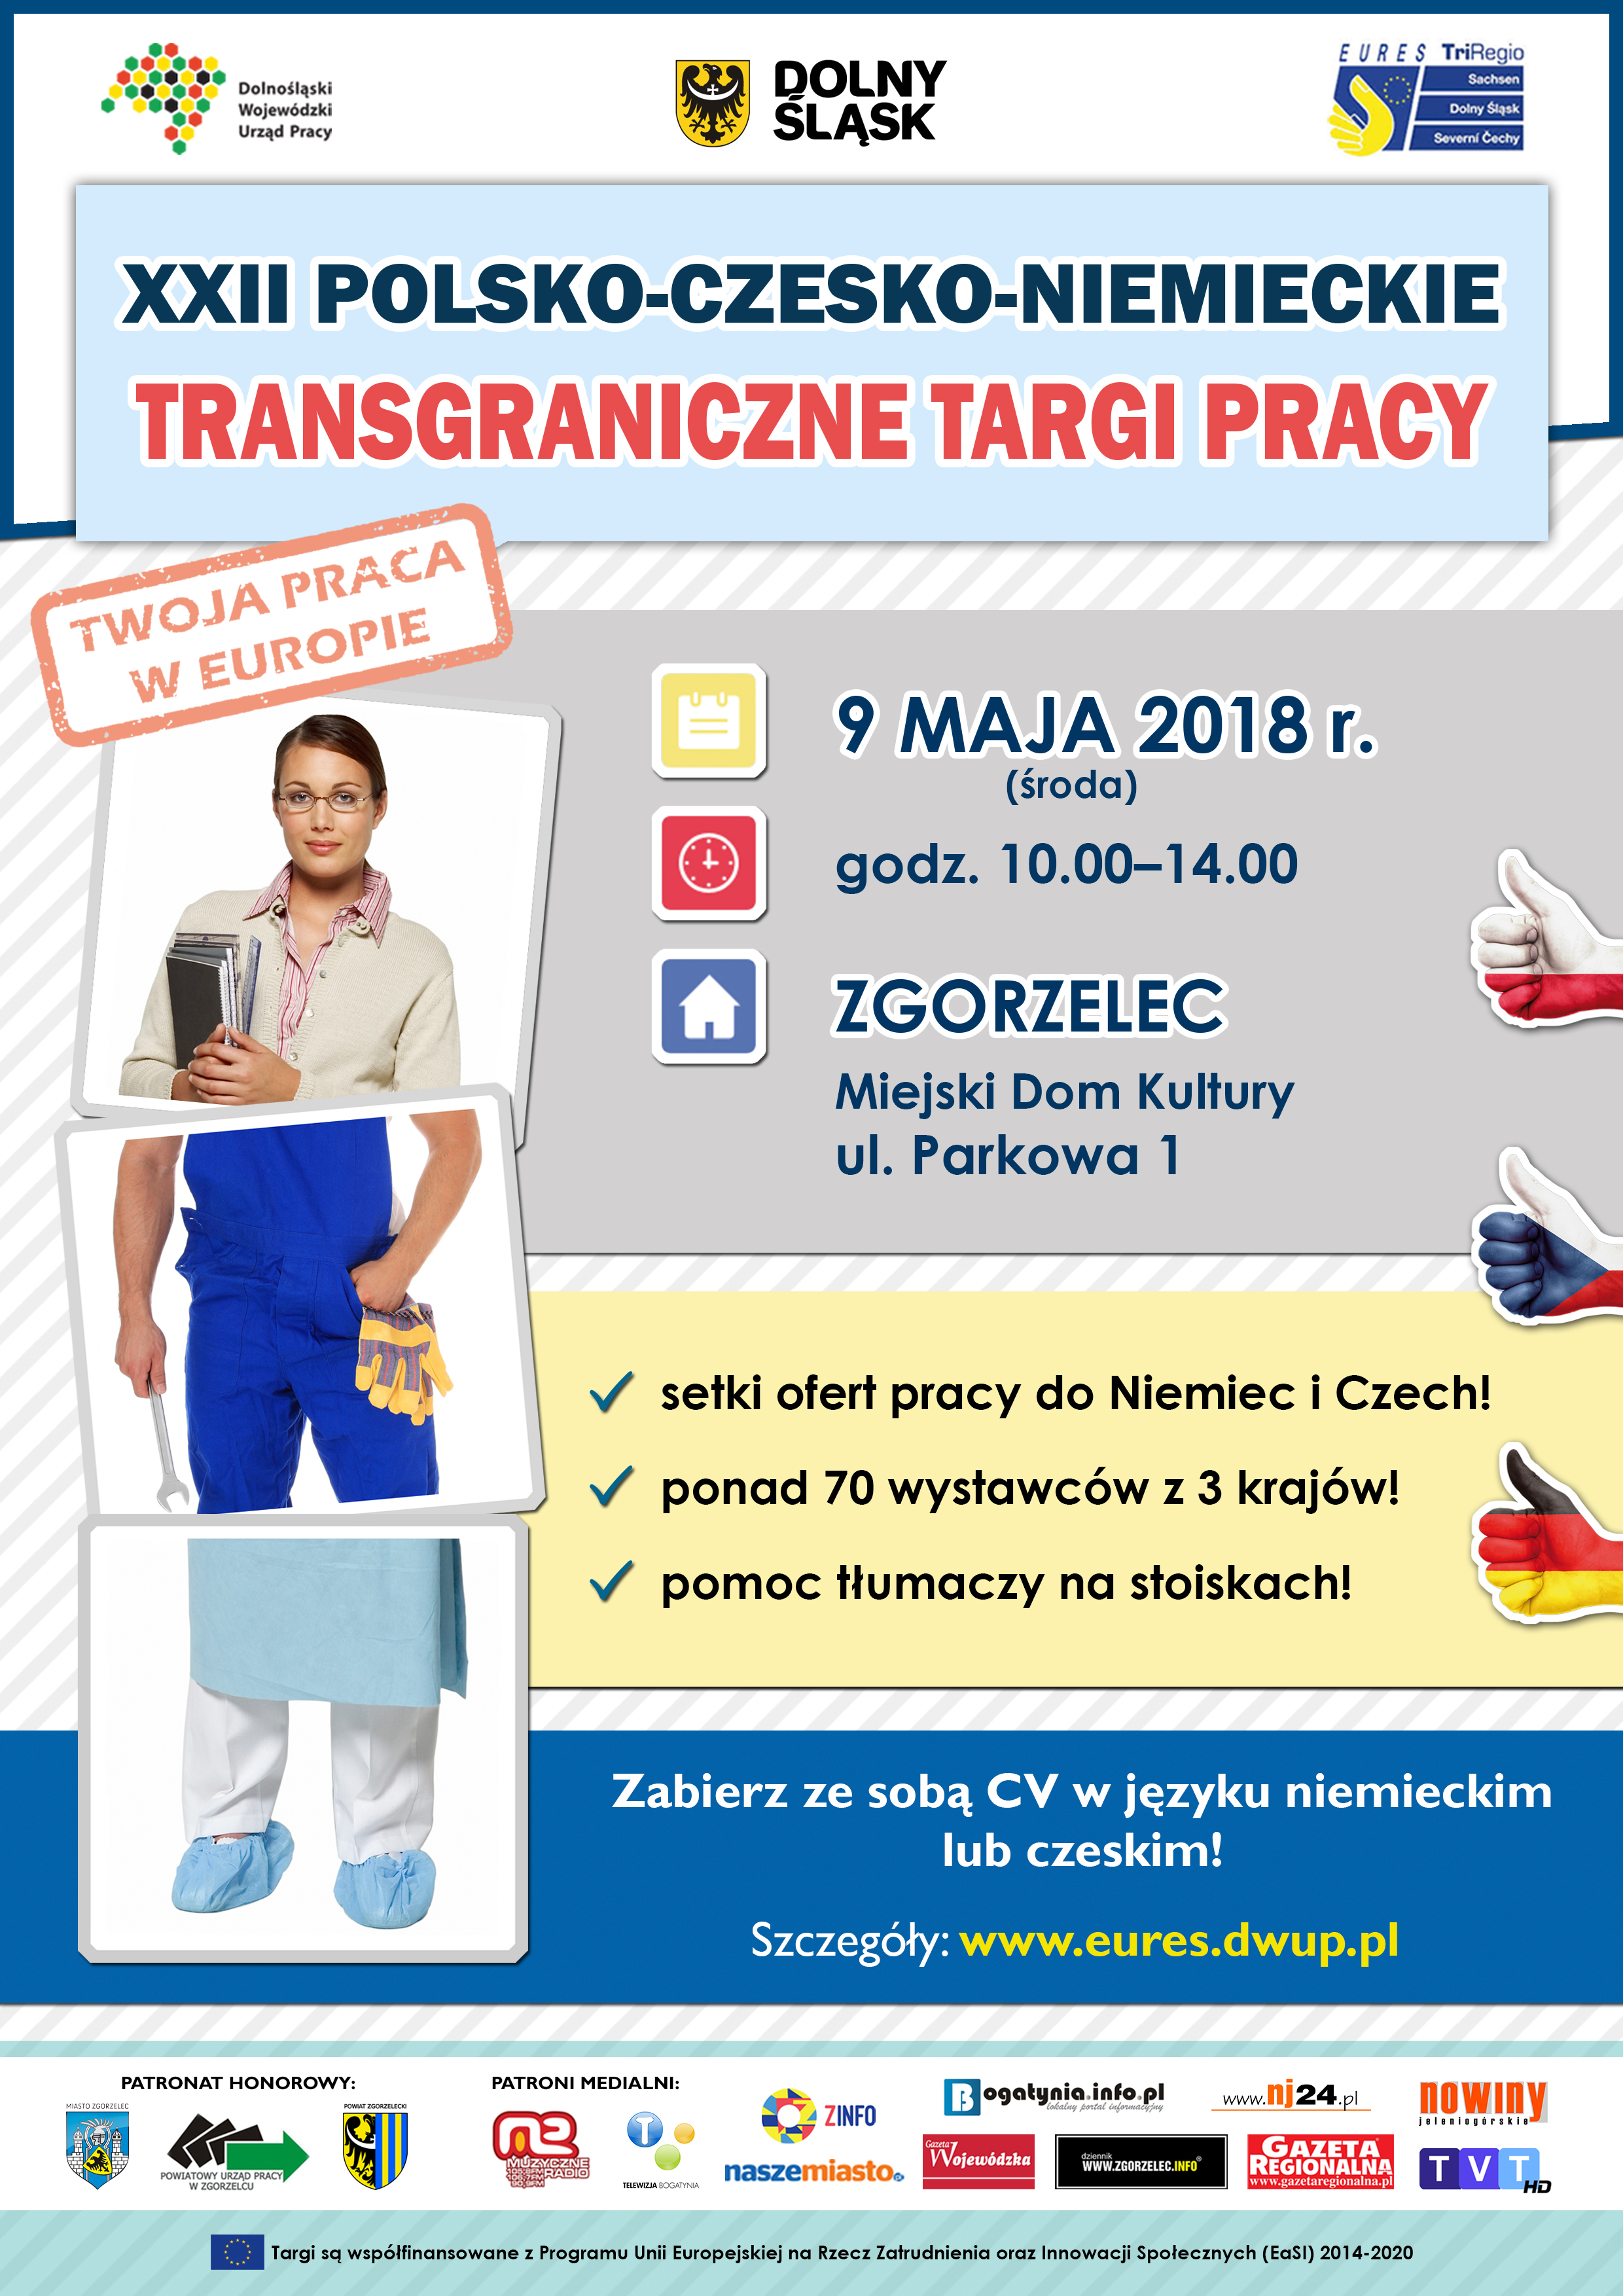 Targi Zgorzelec 2018